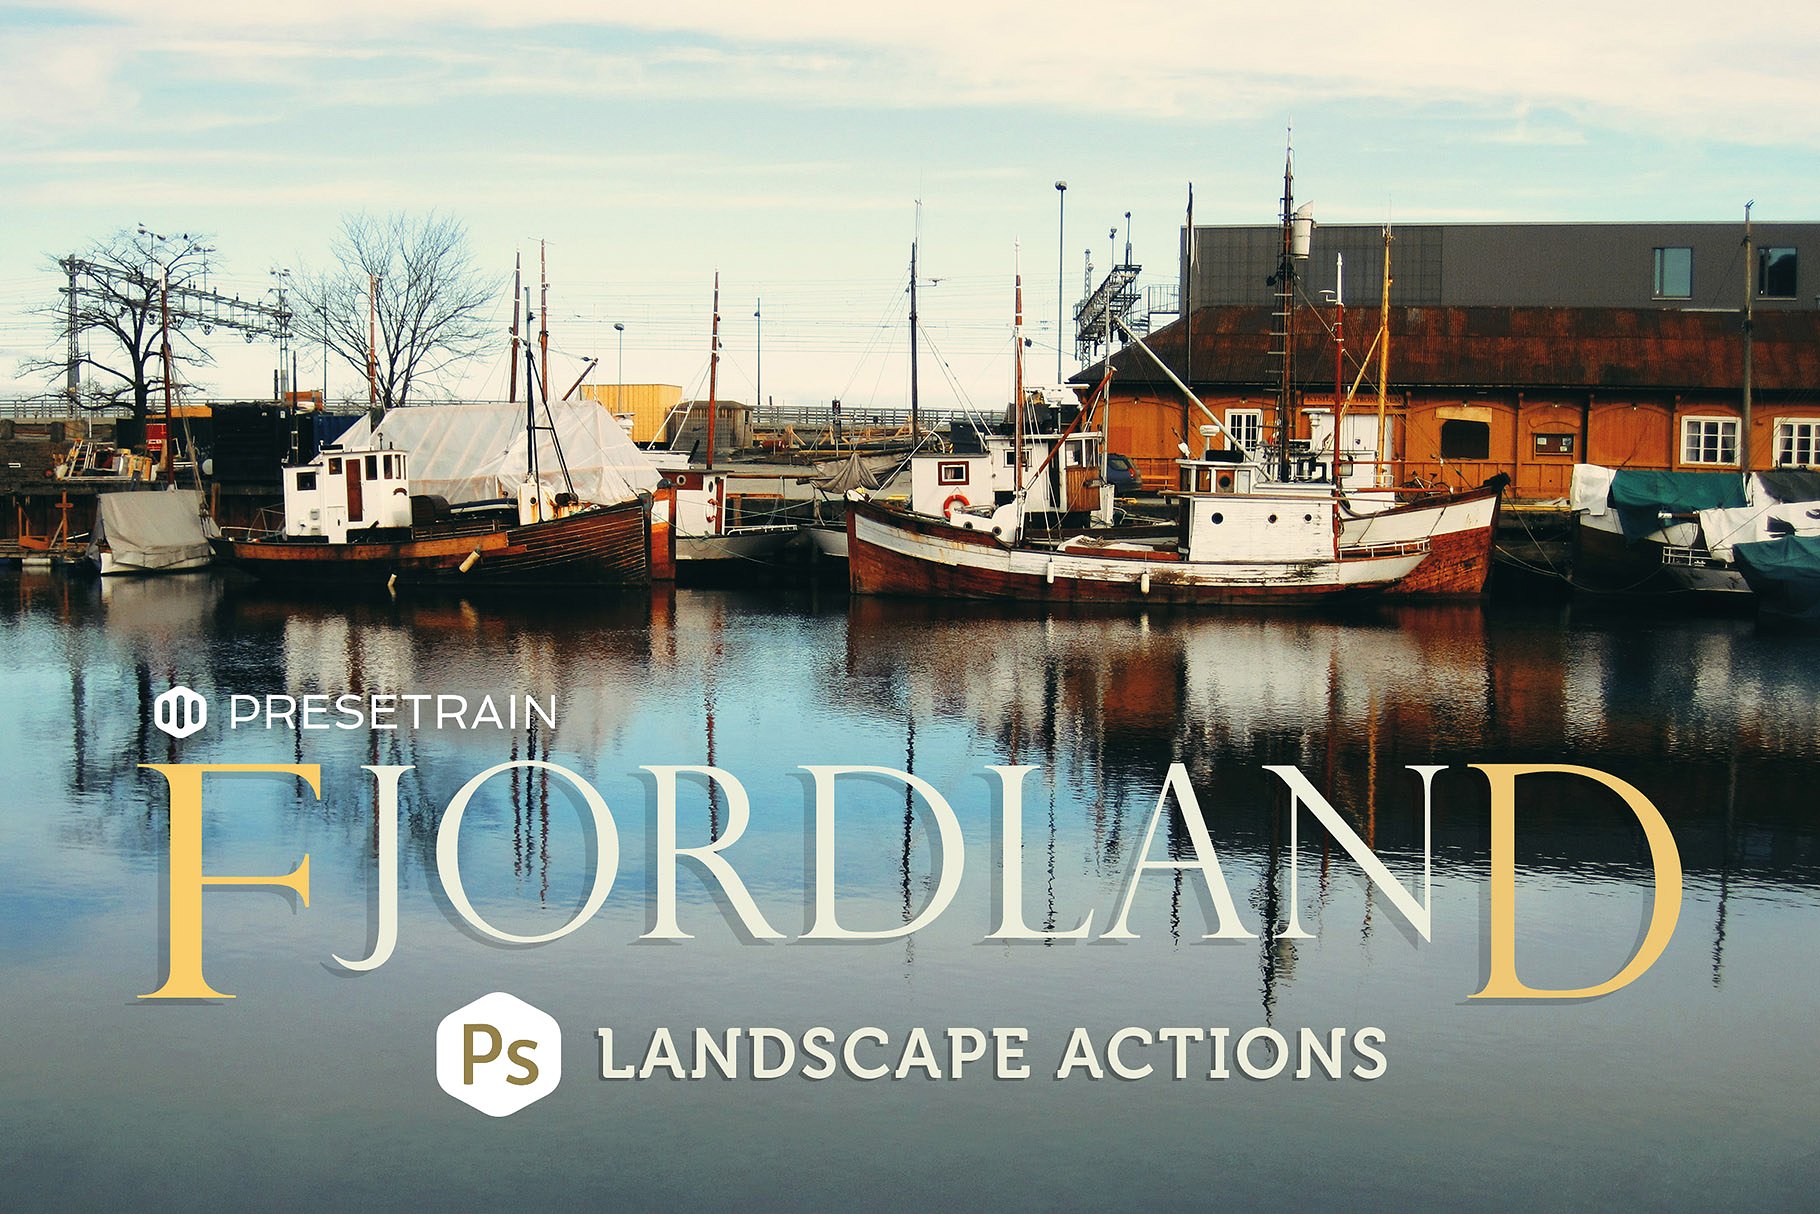 唯美户外风景调色PS动作 Fjordland Landscape PS Actions插图